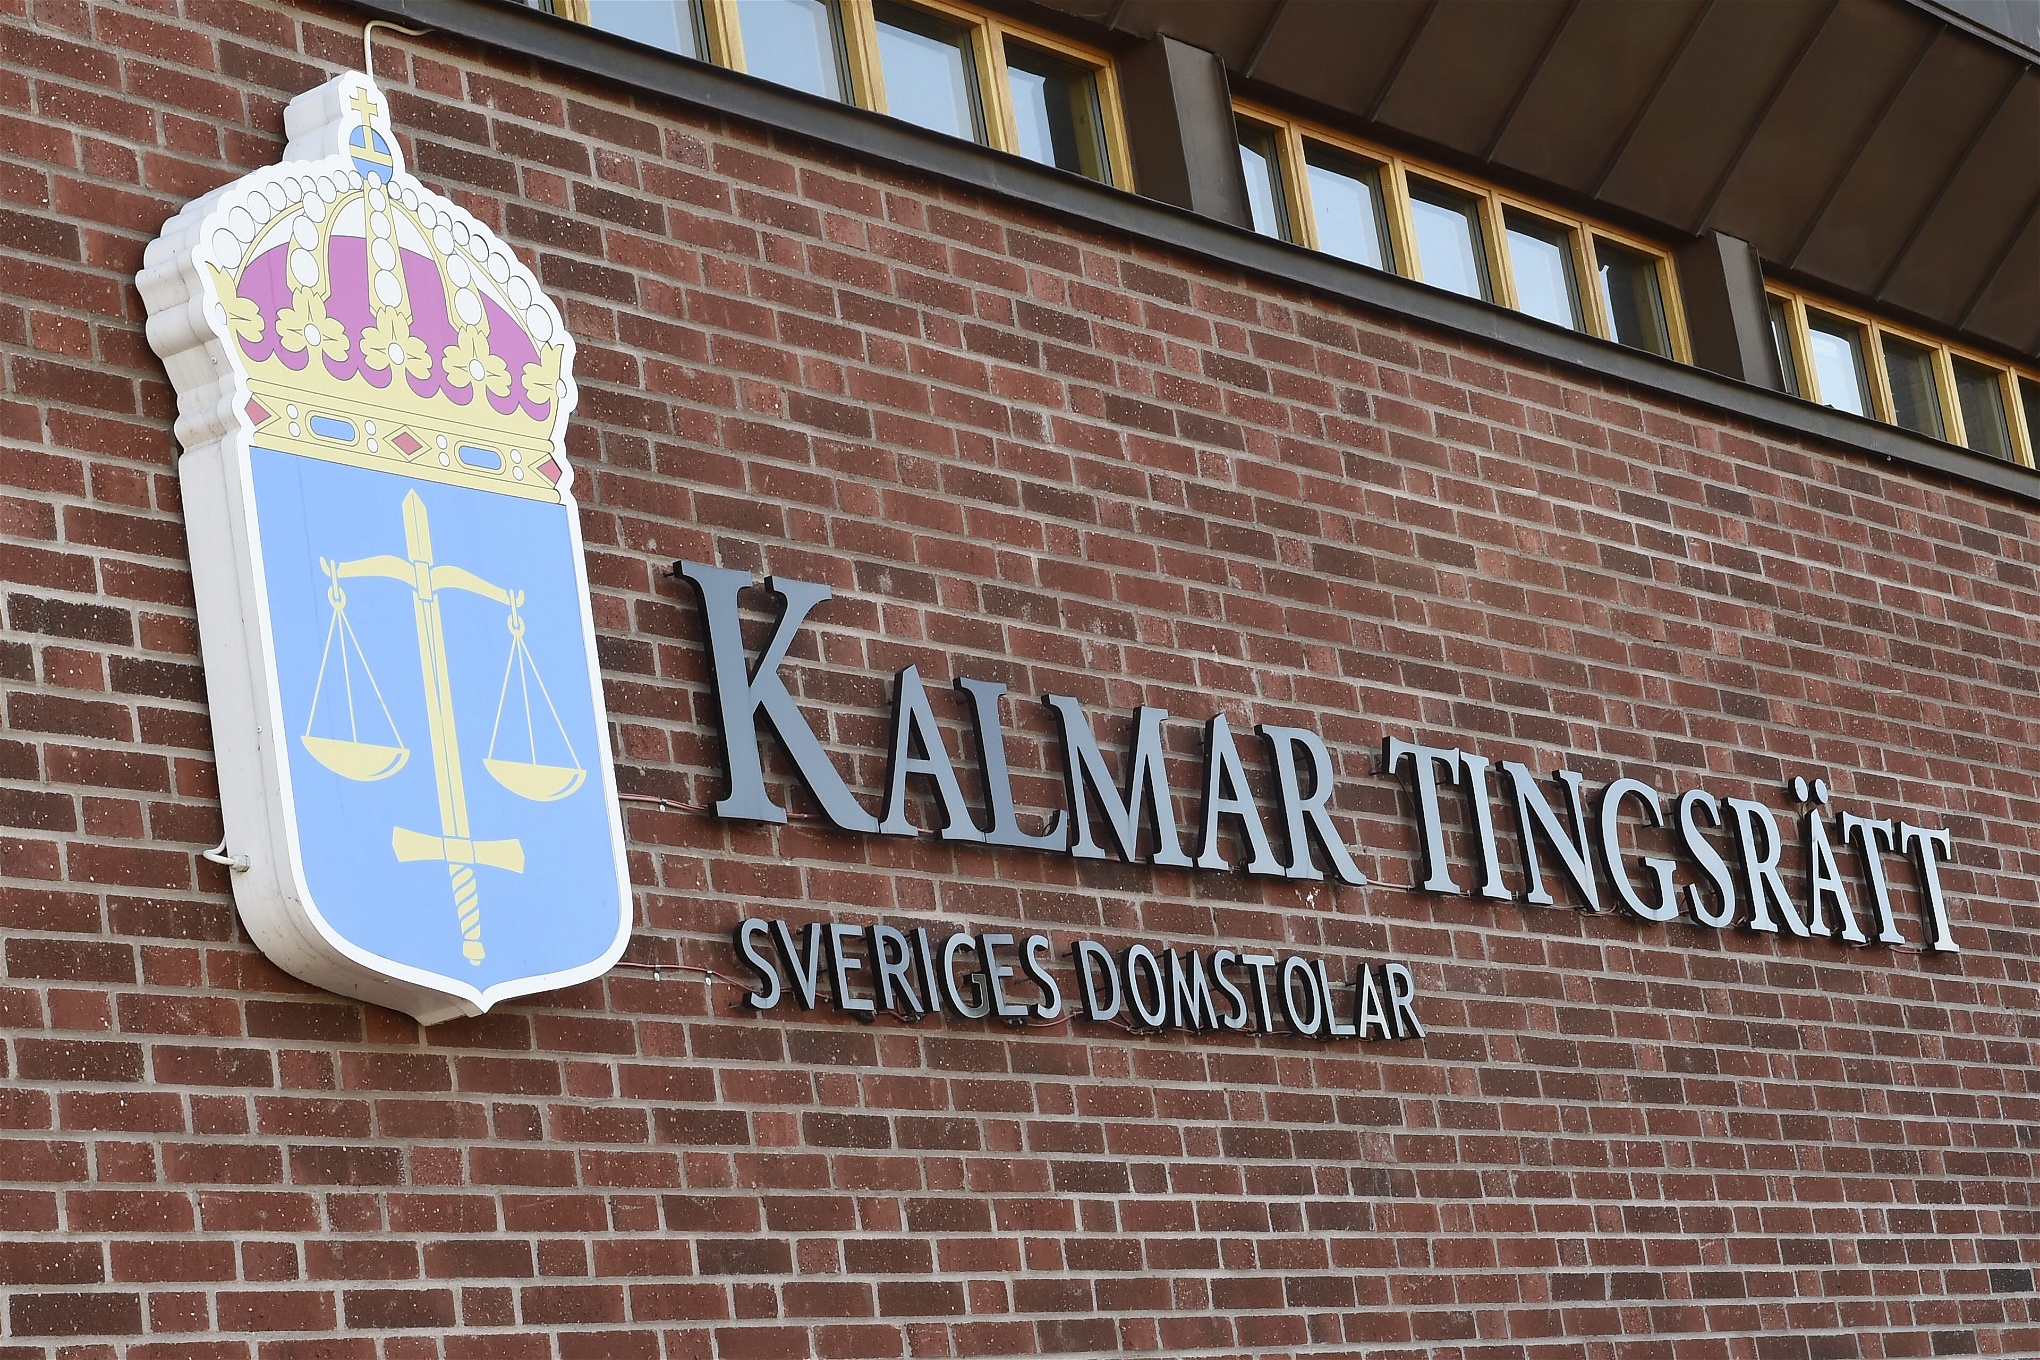 Kalmar Tingsrätt